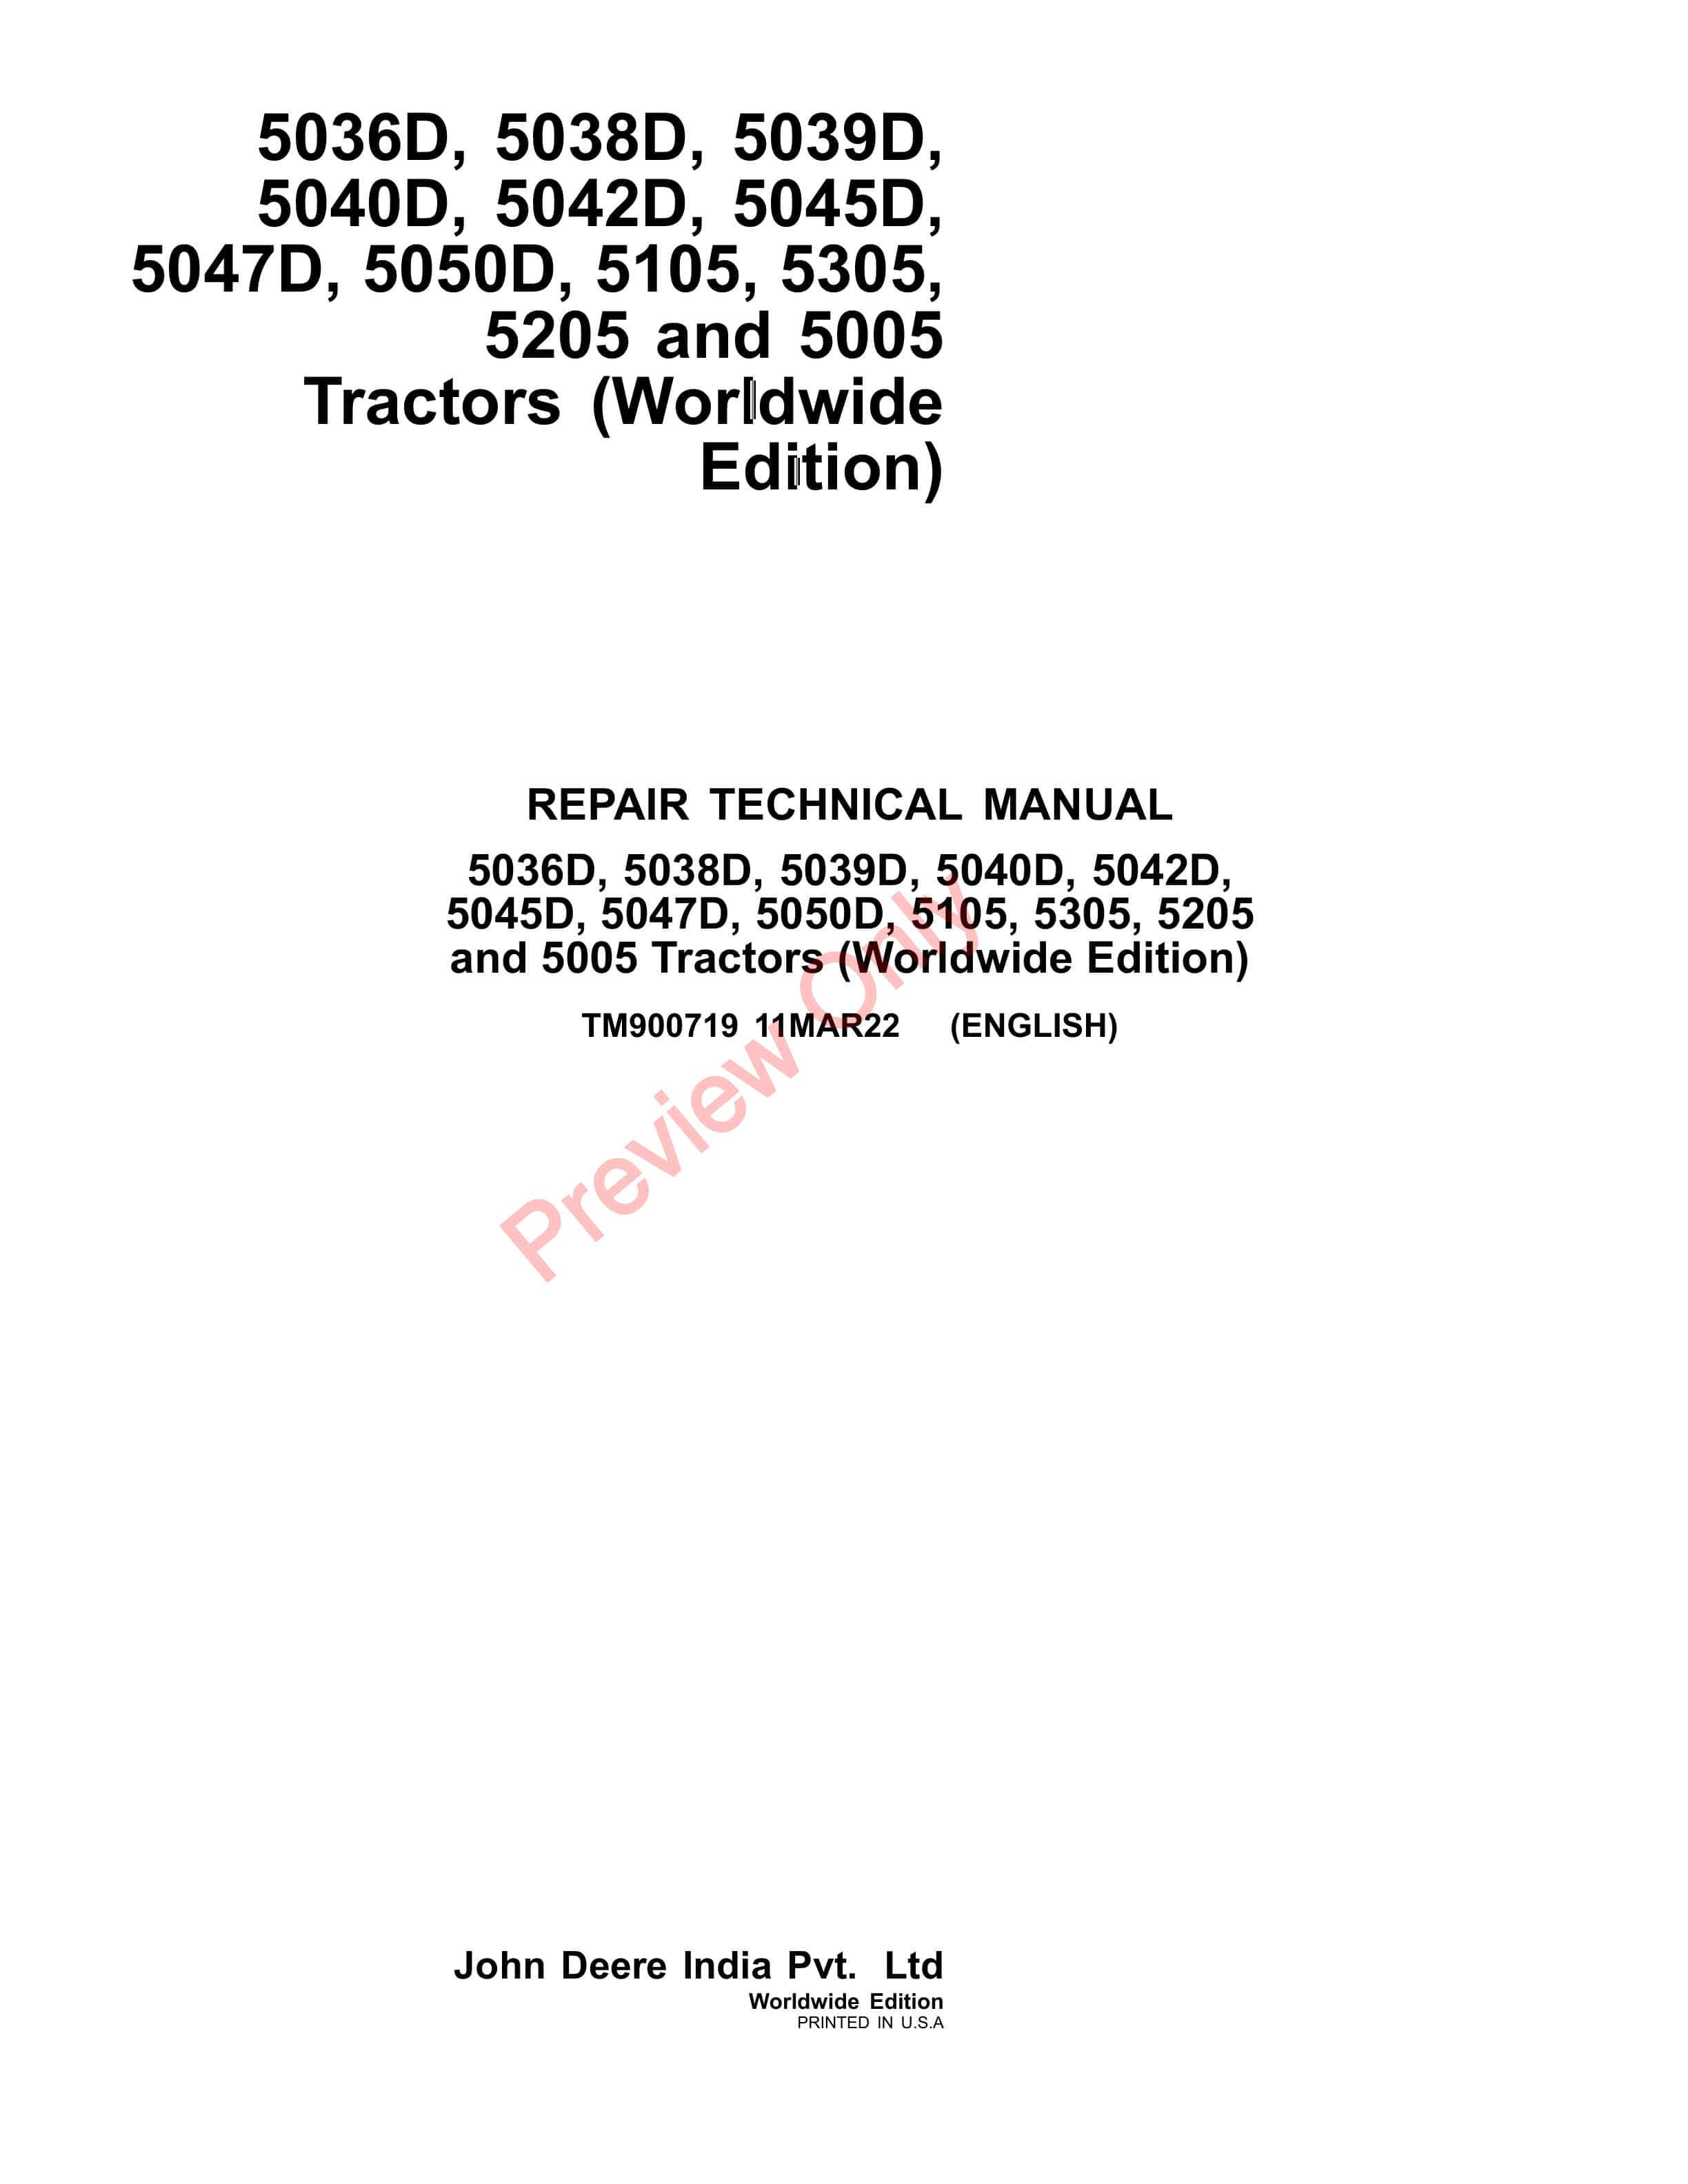 John Deere 5036D 5038D 5039D 5042D 5045D 5047D 5050D 5105 5305 5205 and 5005 Tractors Repair Technical Manual TM900719 11MAR22 1